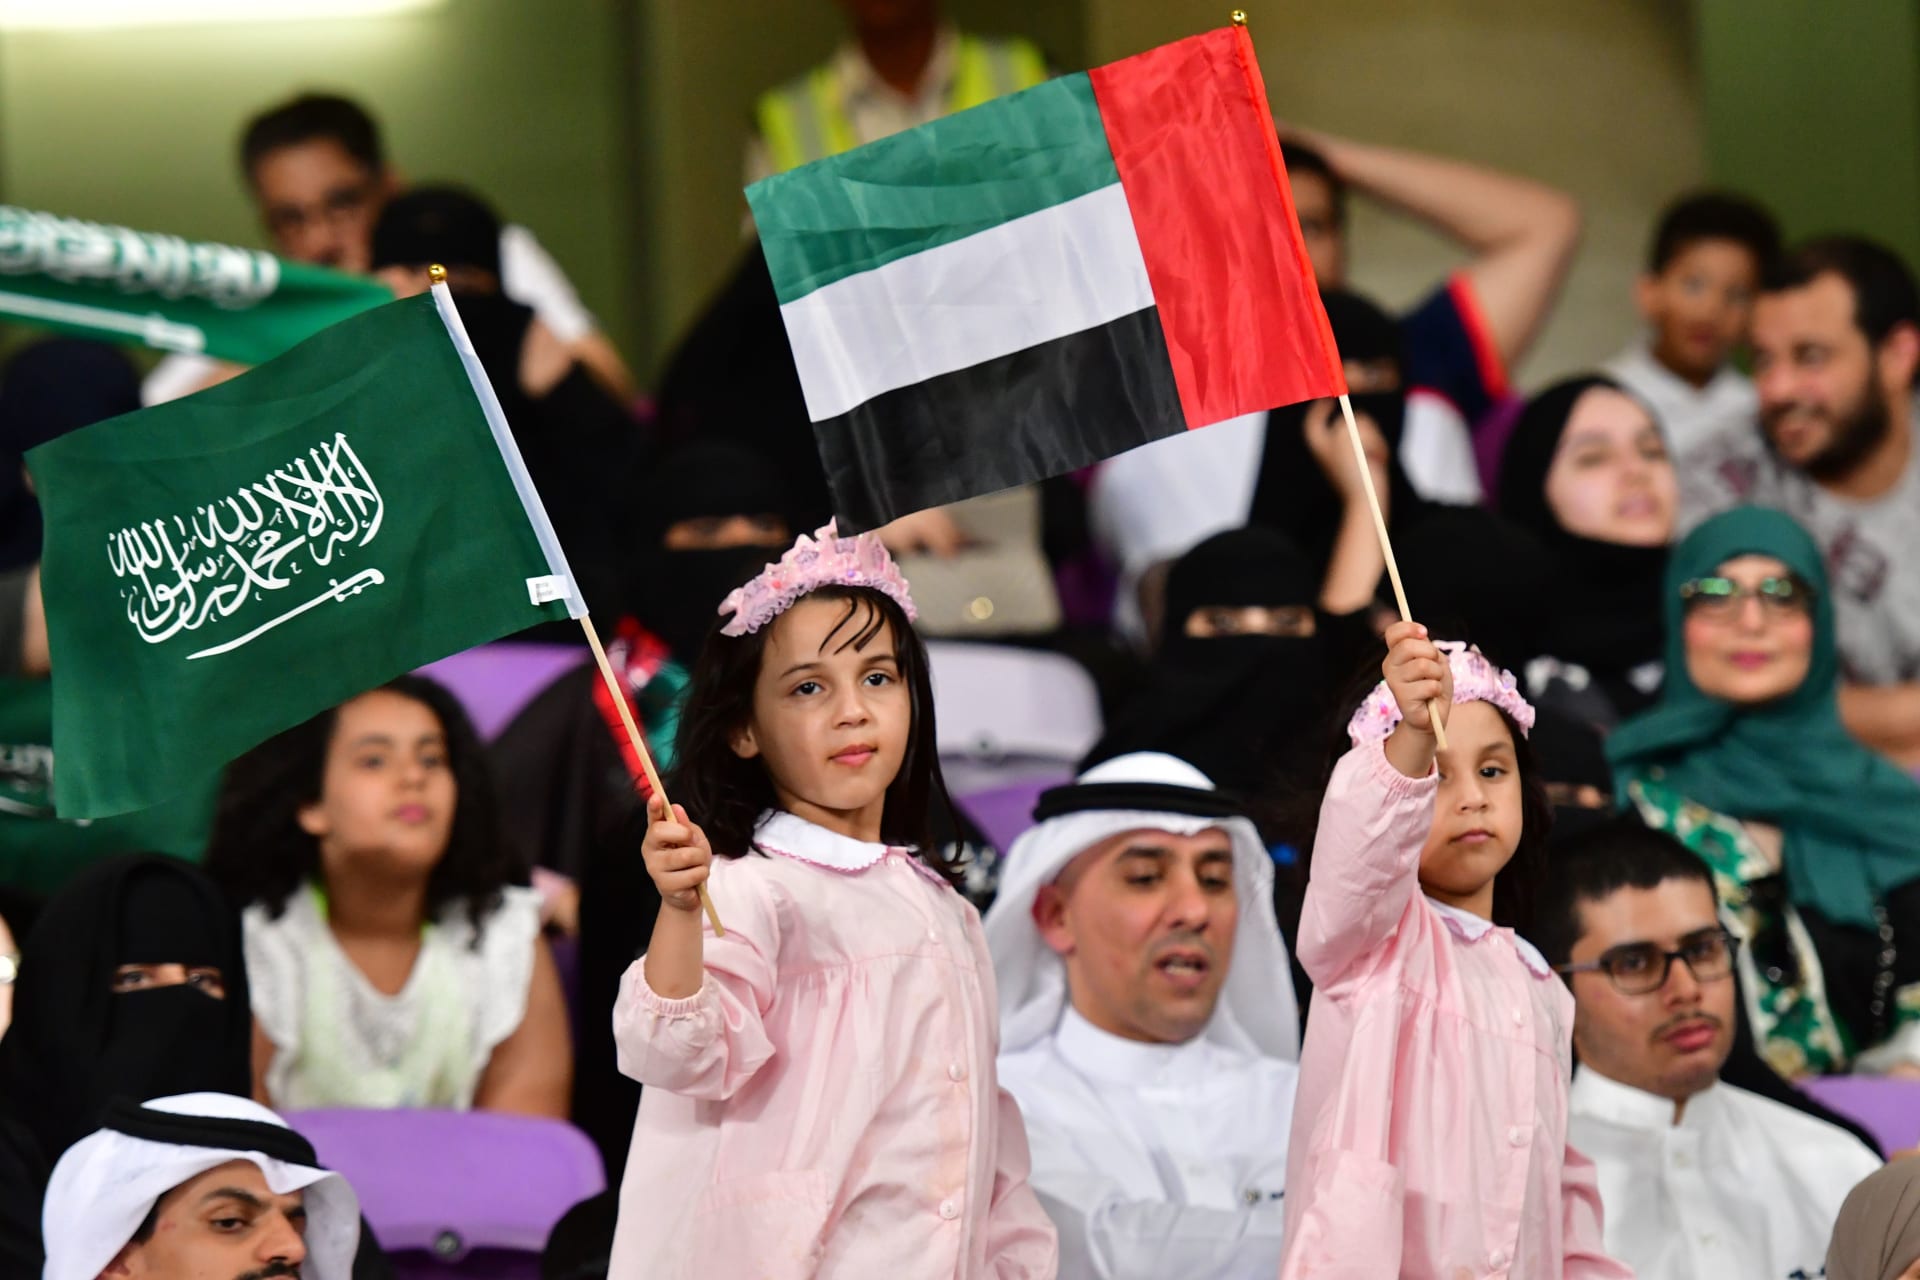 السعودية والإمارات تعلنان عن قرارهما بعد رفض الاتحاد الآسيوي لـ"الملاعب المحايدة"